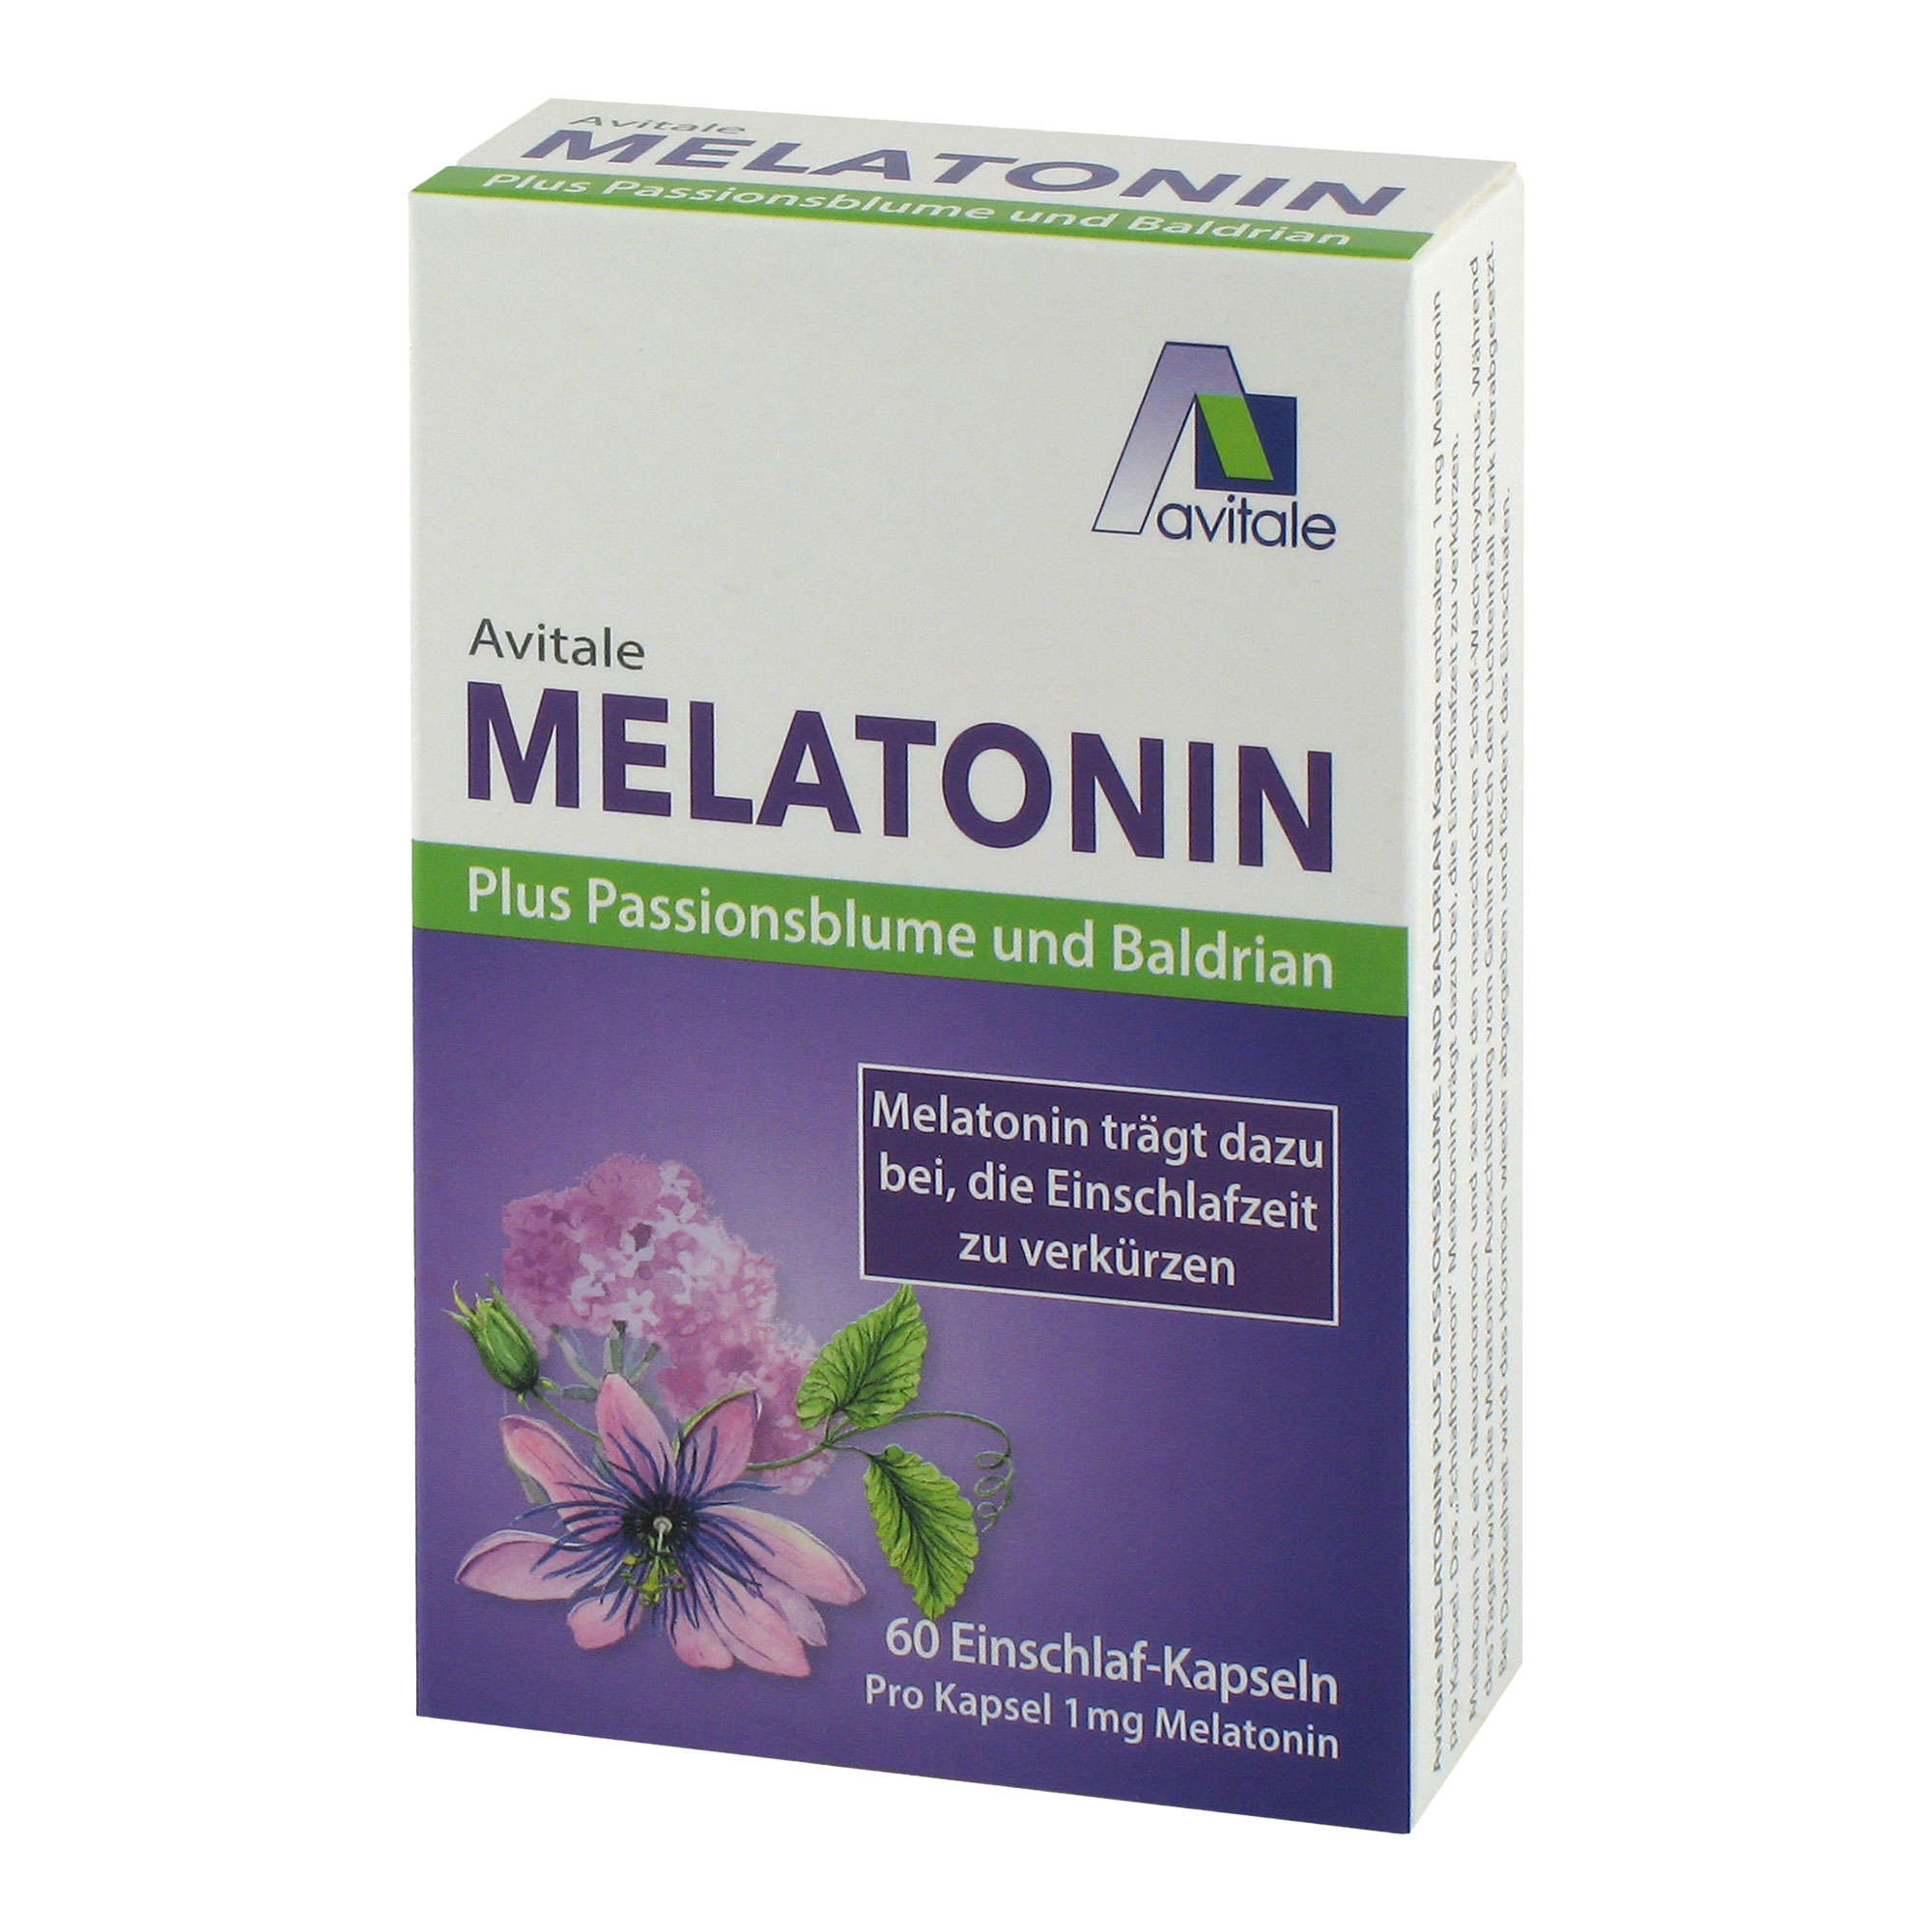 Nahrungsergänzungsmittel mit 1 mg Melatonin, Passionsblumen- und Baldrianextrakt.